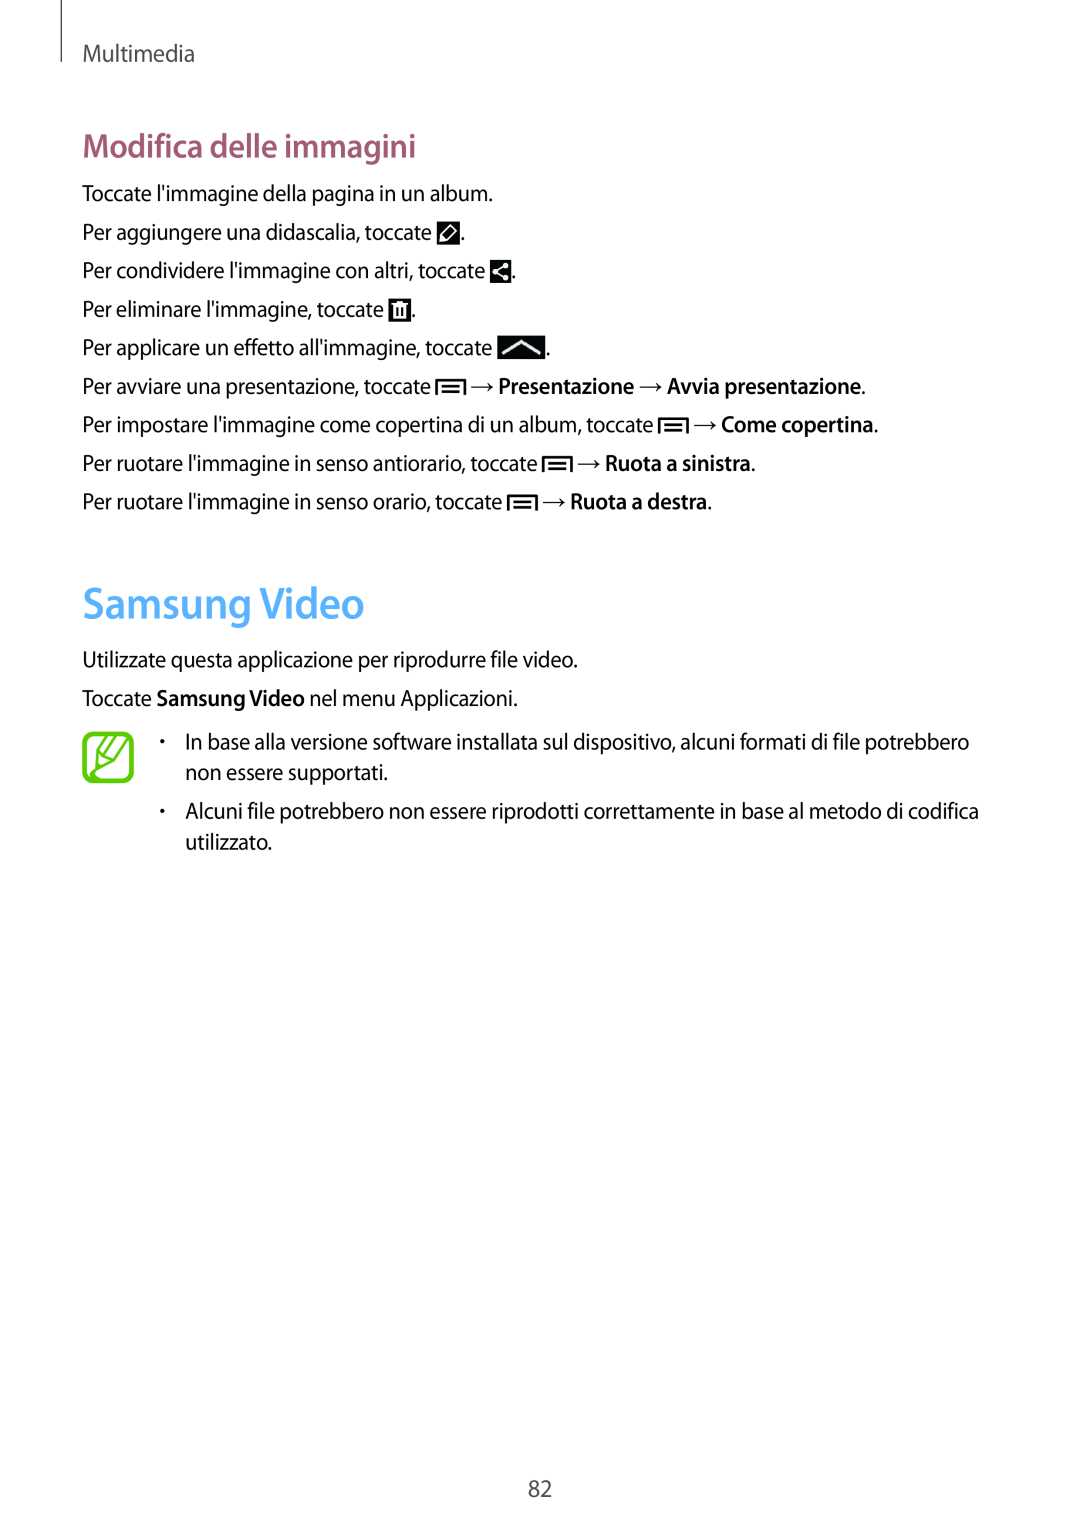 Samsung GT-I9195ZYAITV, GT-I9195DKYPLS, GT-I9195ZKAWIN Samsung Video, →Ruota a destra, Modifica delle immagini, Multimedia 